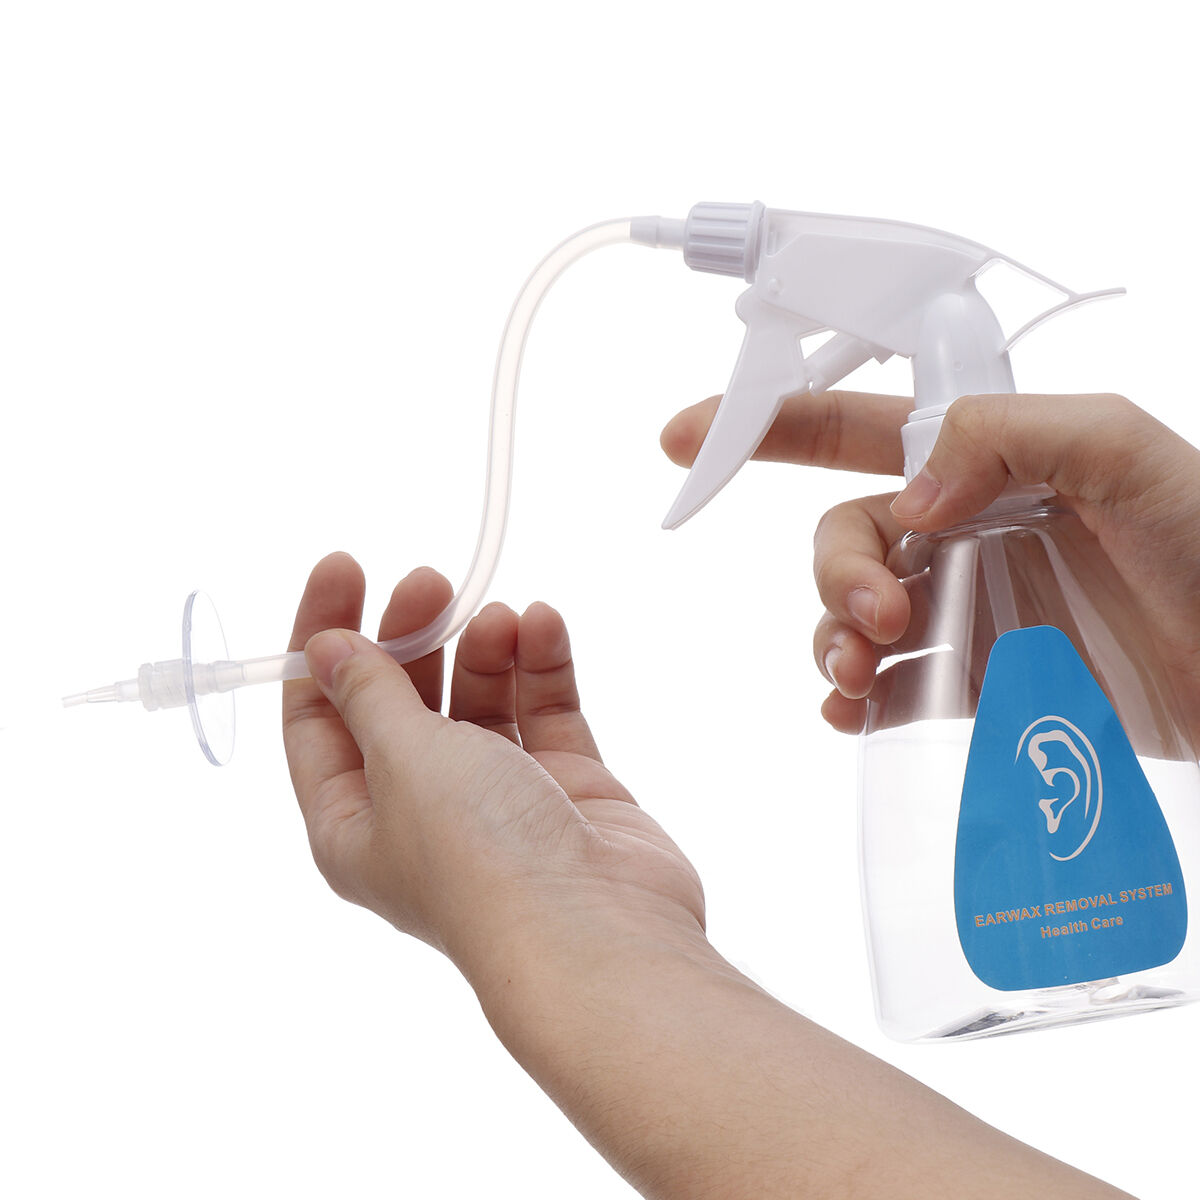 Slimerence Earwax Remover Hulpmiddelen Kit voor gevoelige oren Volwassenen en kinderen Inclusief wasbakje Fles Rubberen lamp Spuit 4 Wegwerpuiteinden Borstel